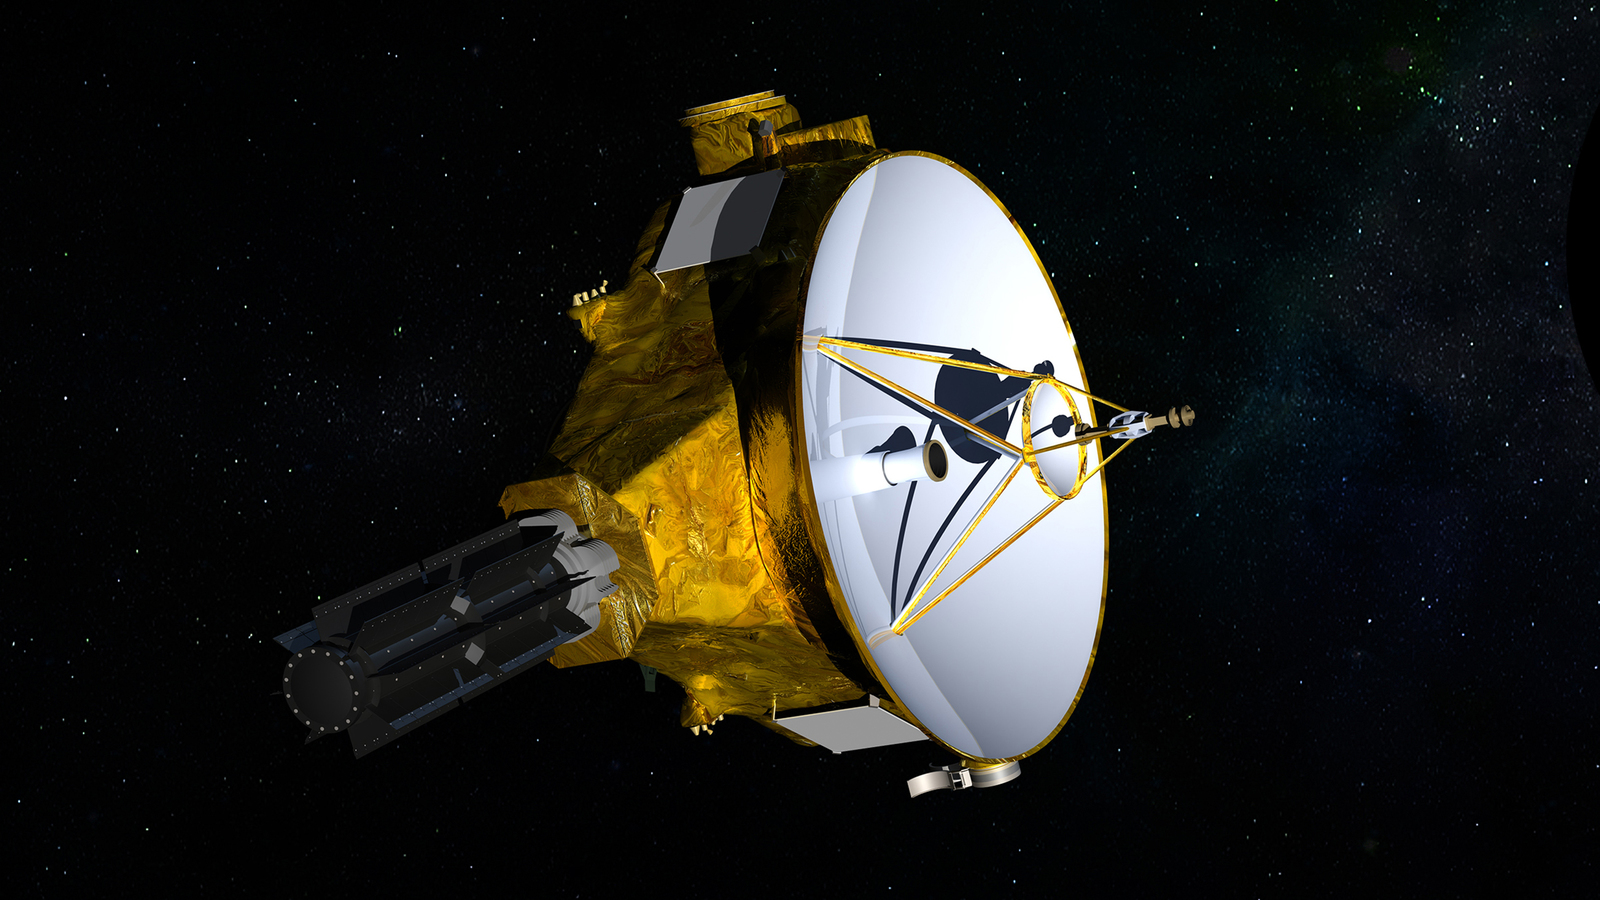 Rumbo. La sonda 'New Horizons' sobrevolará Ultima Thule, el cuerpo más lejano del Sistema Solar que se haya visitado.